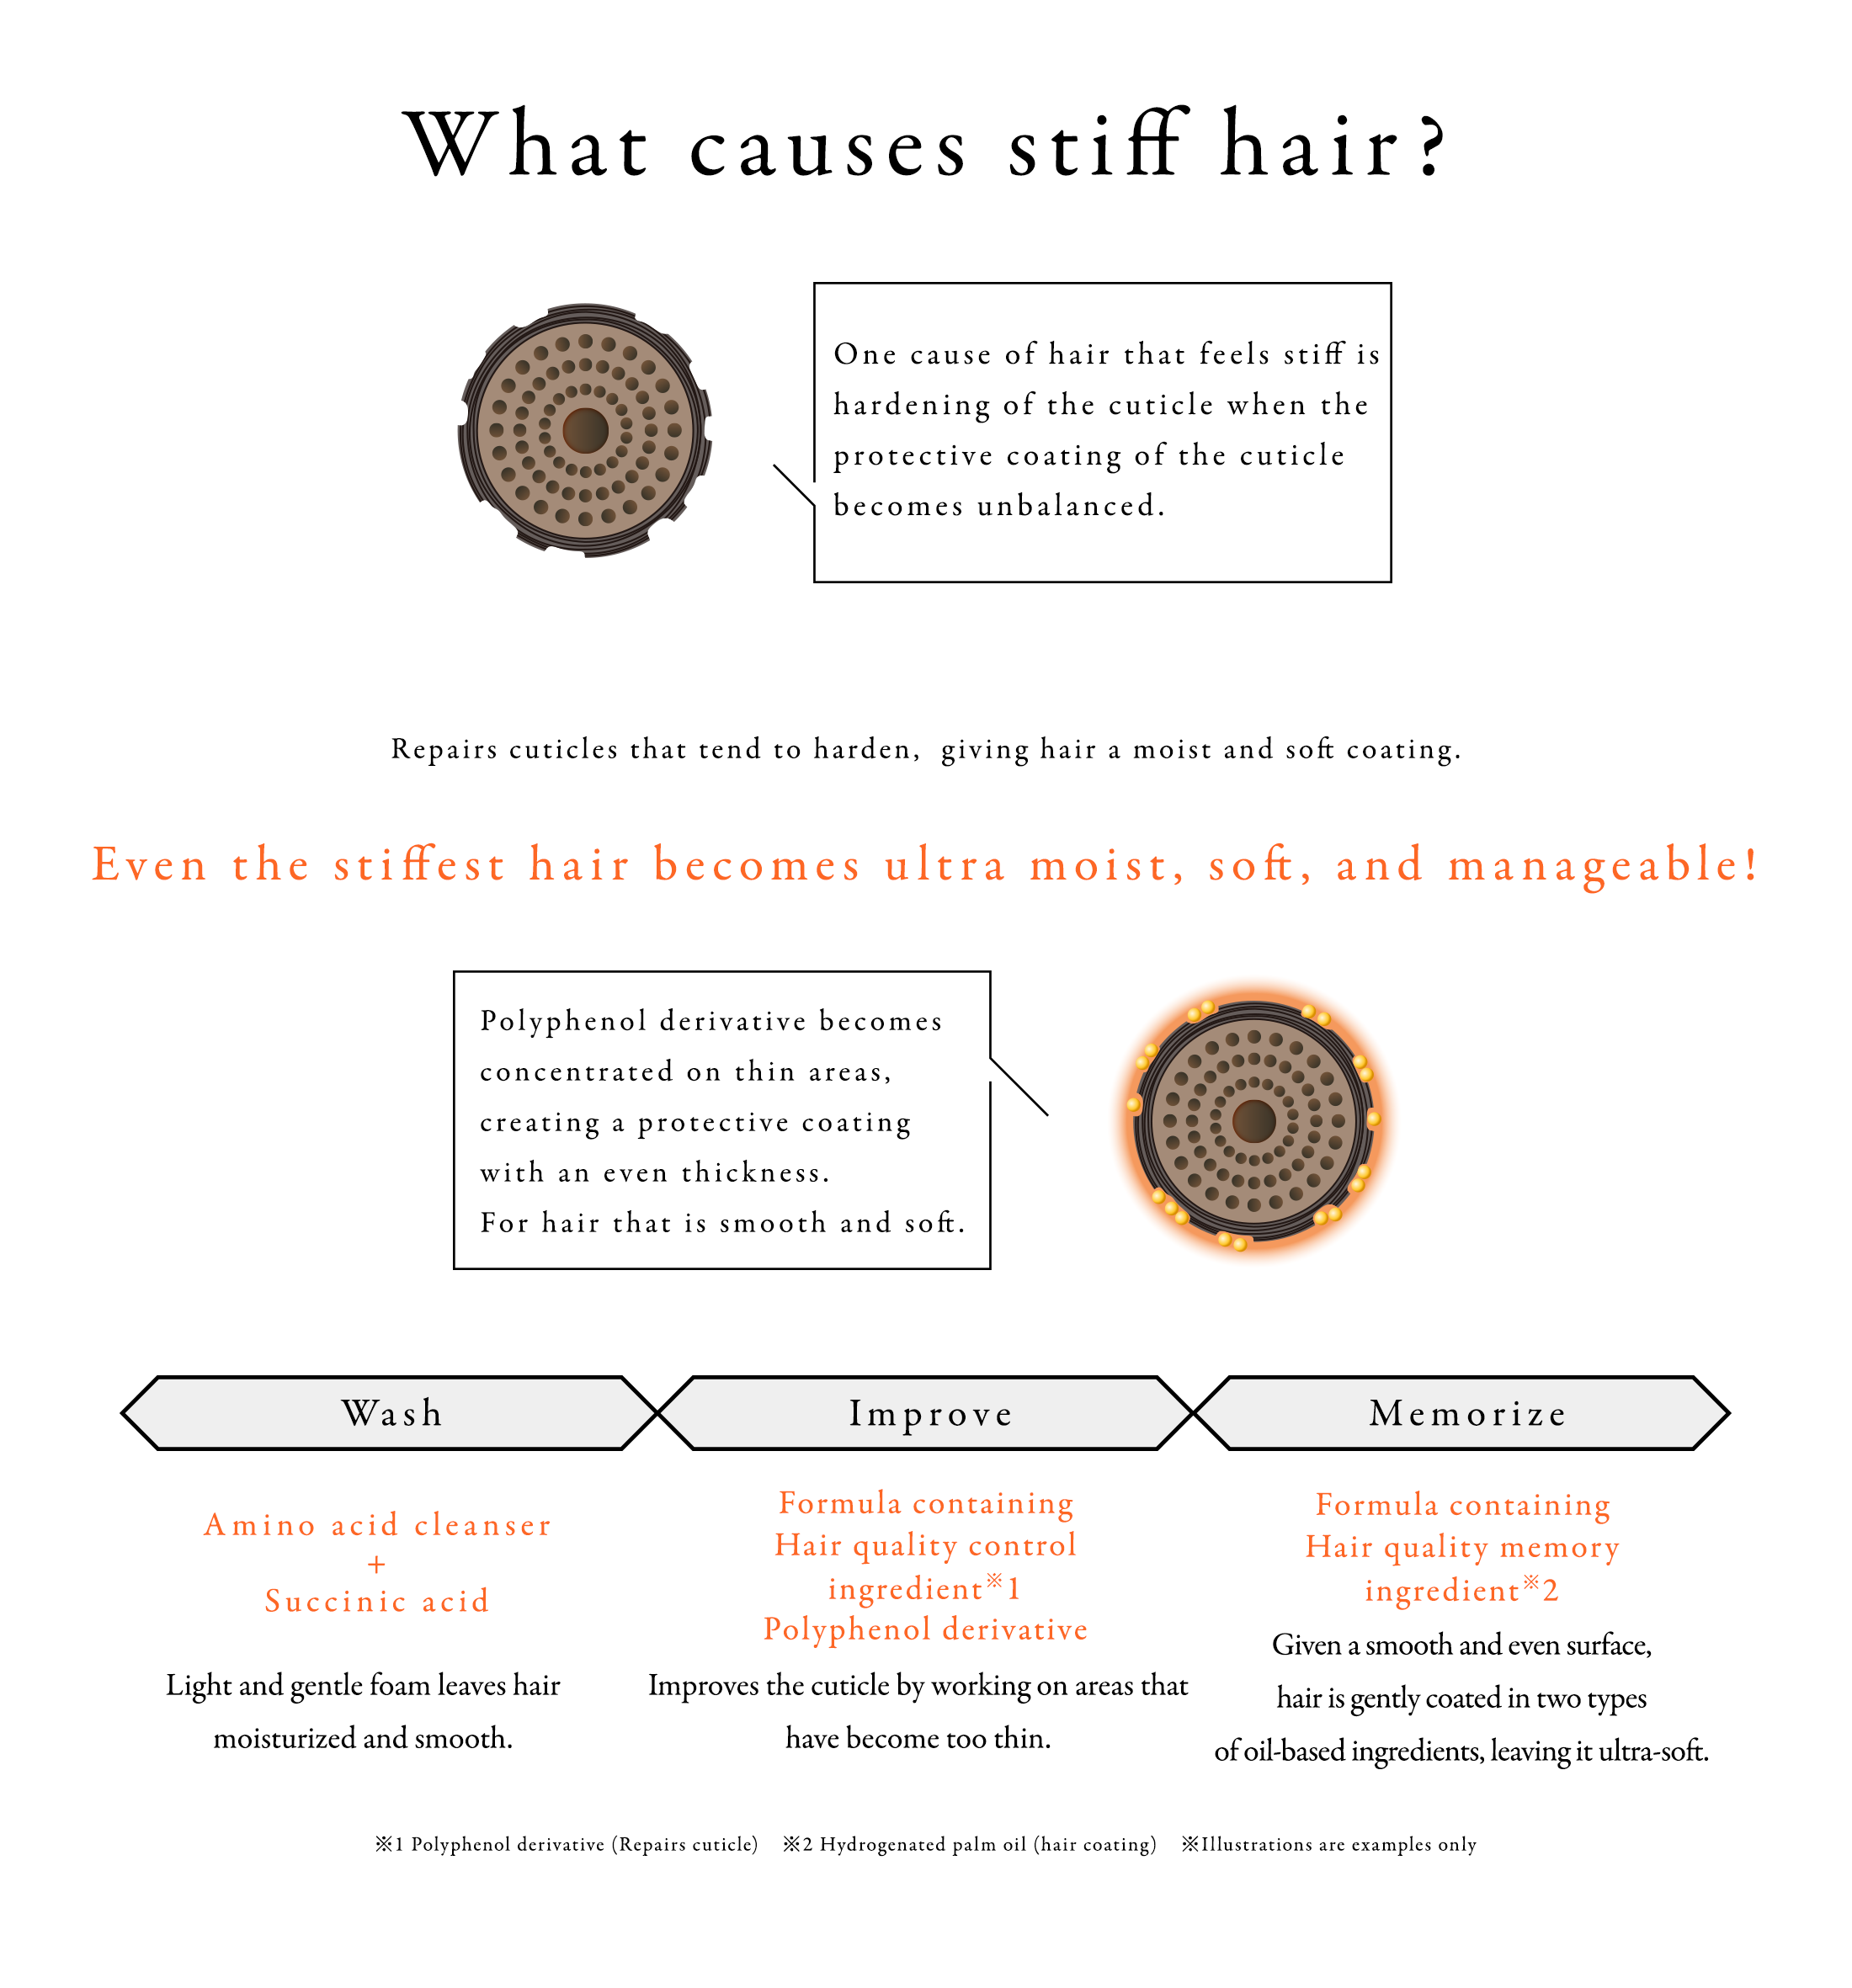 What causes stiff hair?